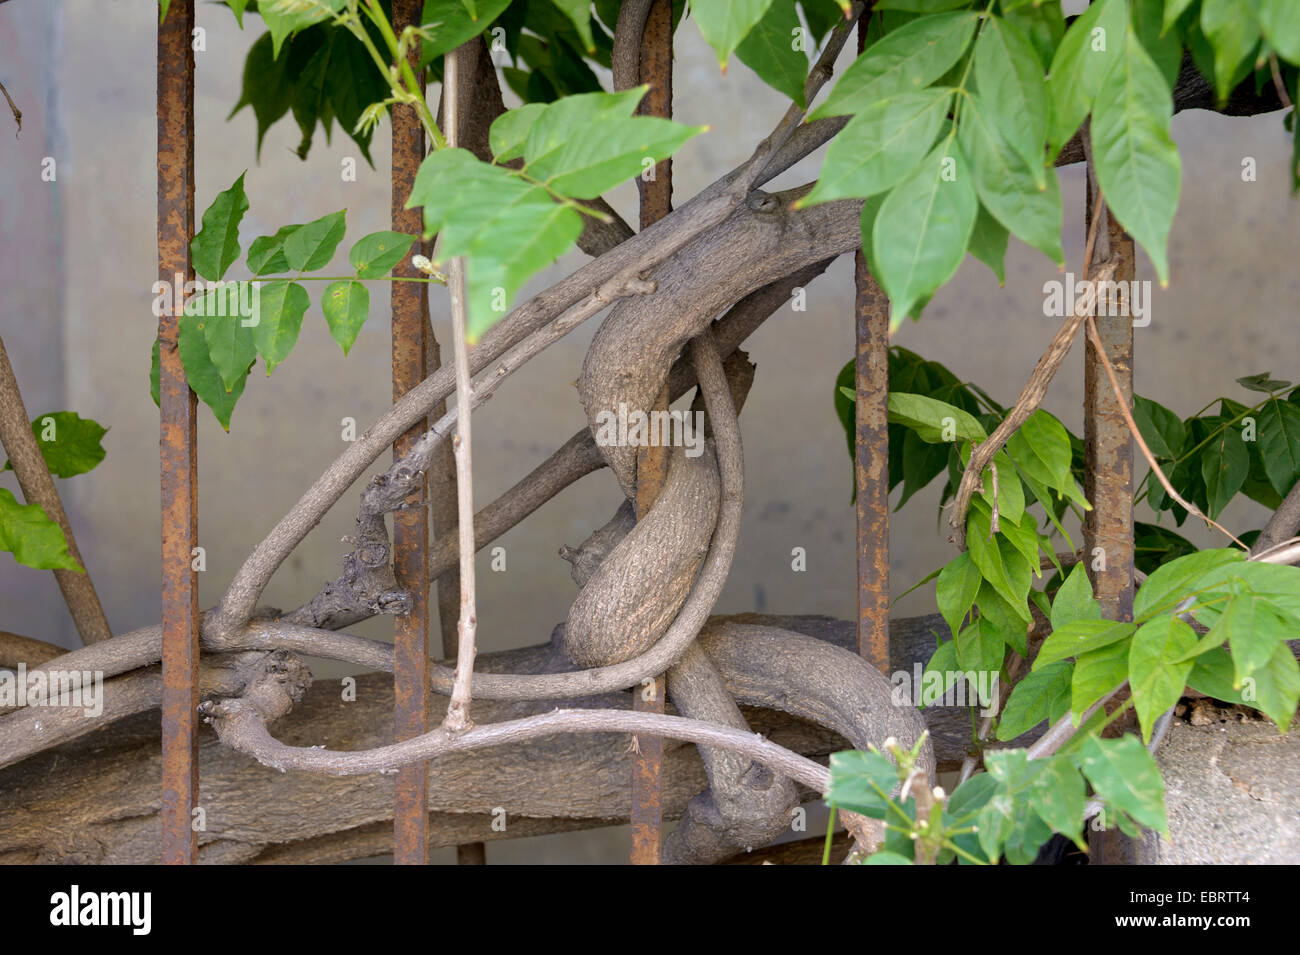 Cinese (Glicine Wisteria sinensis), salendo a un recinto, Spagna Foto Stock